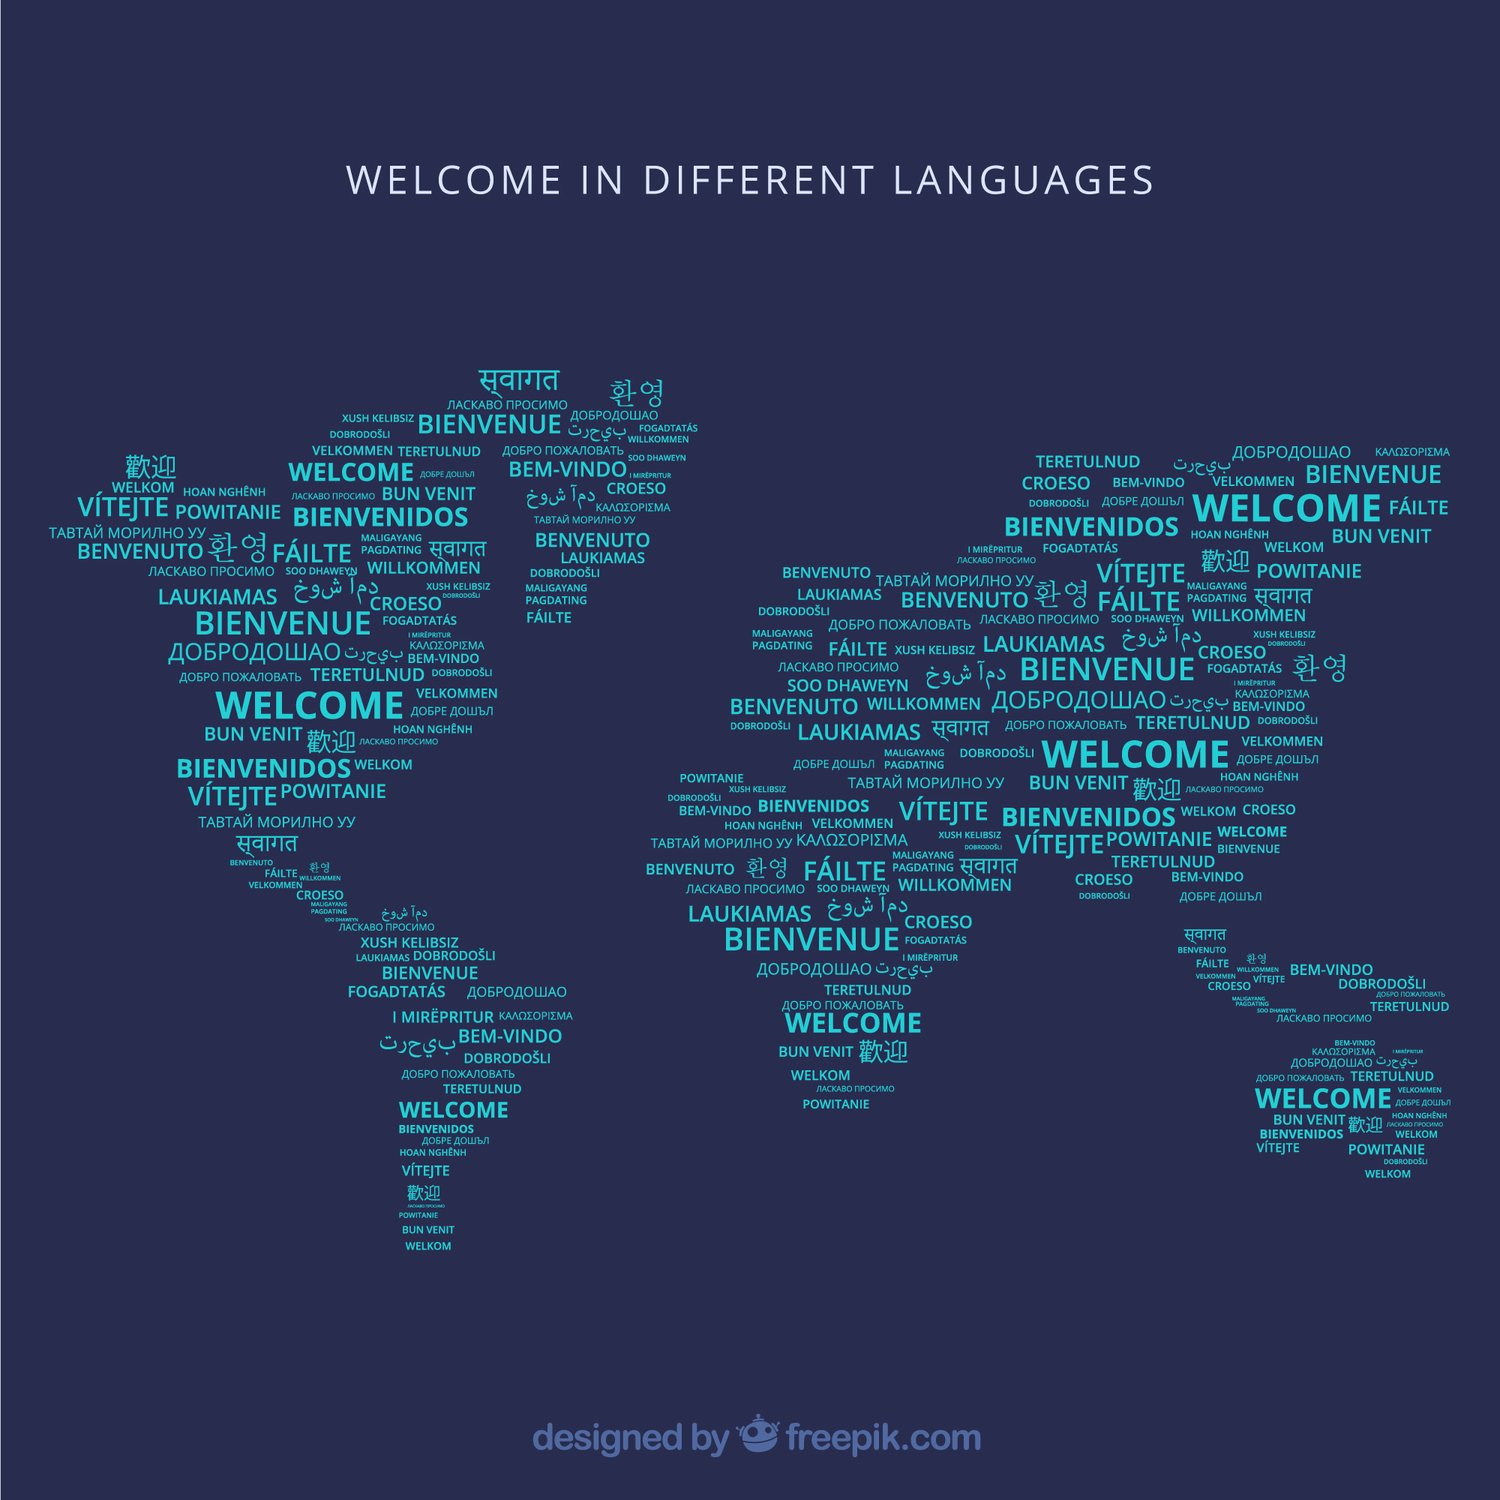 Quels pays ont le plus grand nombre de langues parlées ?